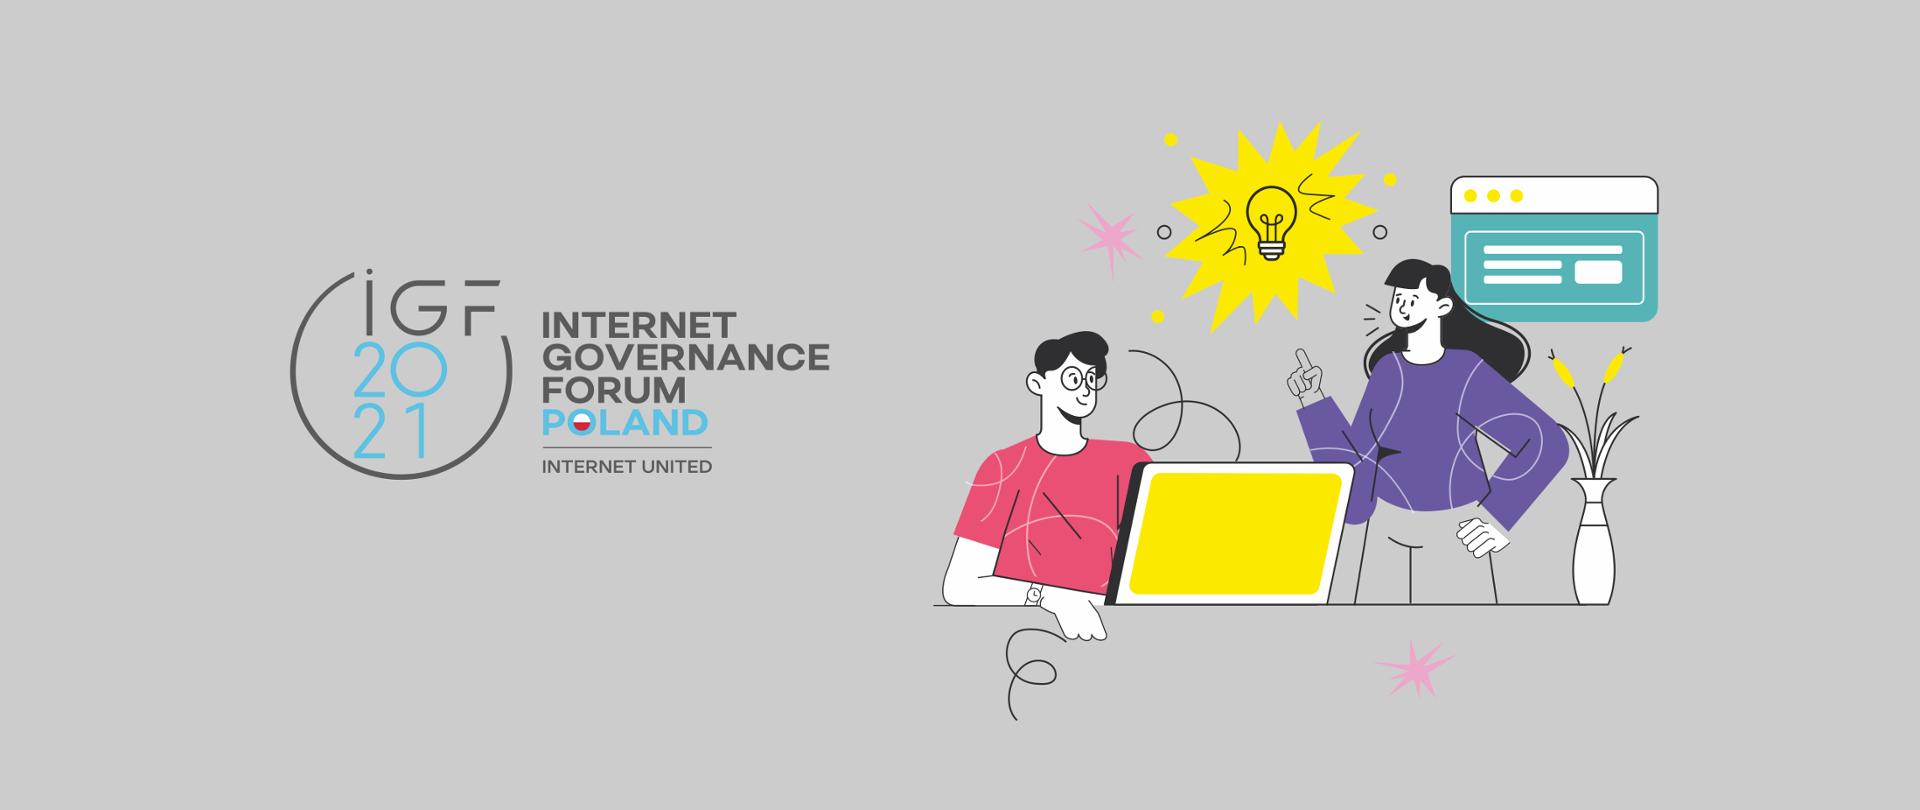 Grafika wektorowa na szarym tle. Z lewej strony logo IGF 2021 Internet Governance Forum Poland | Internet United. Po prawej grafika z dwiema osobami - jedna (mężczyzna) siedzi przed żółtym laptopem. Druga (kobieta) stoi obok. Dyskutują - pomiędzy nimi symbol żarówki (pomysł).